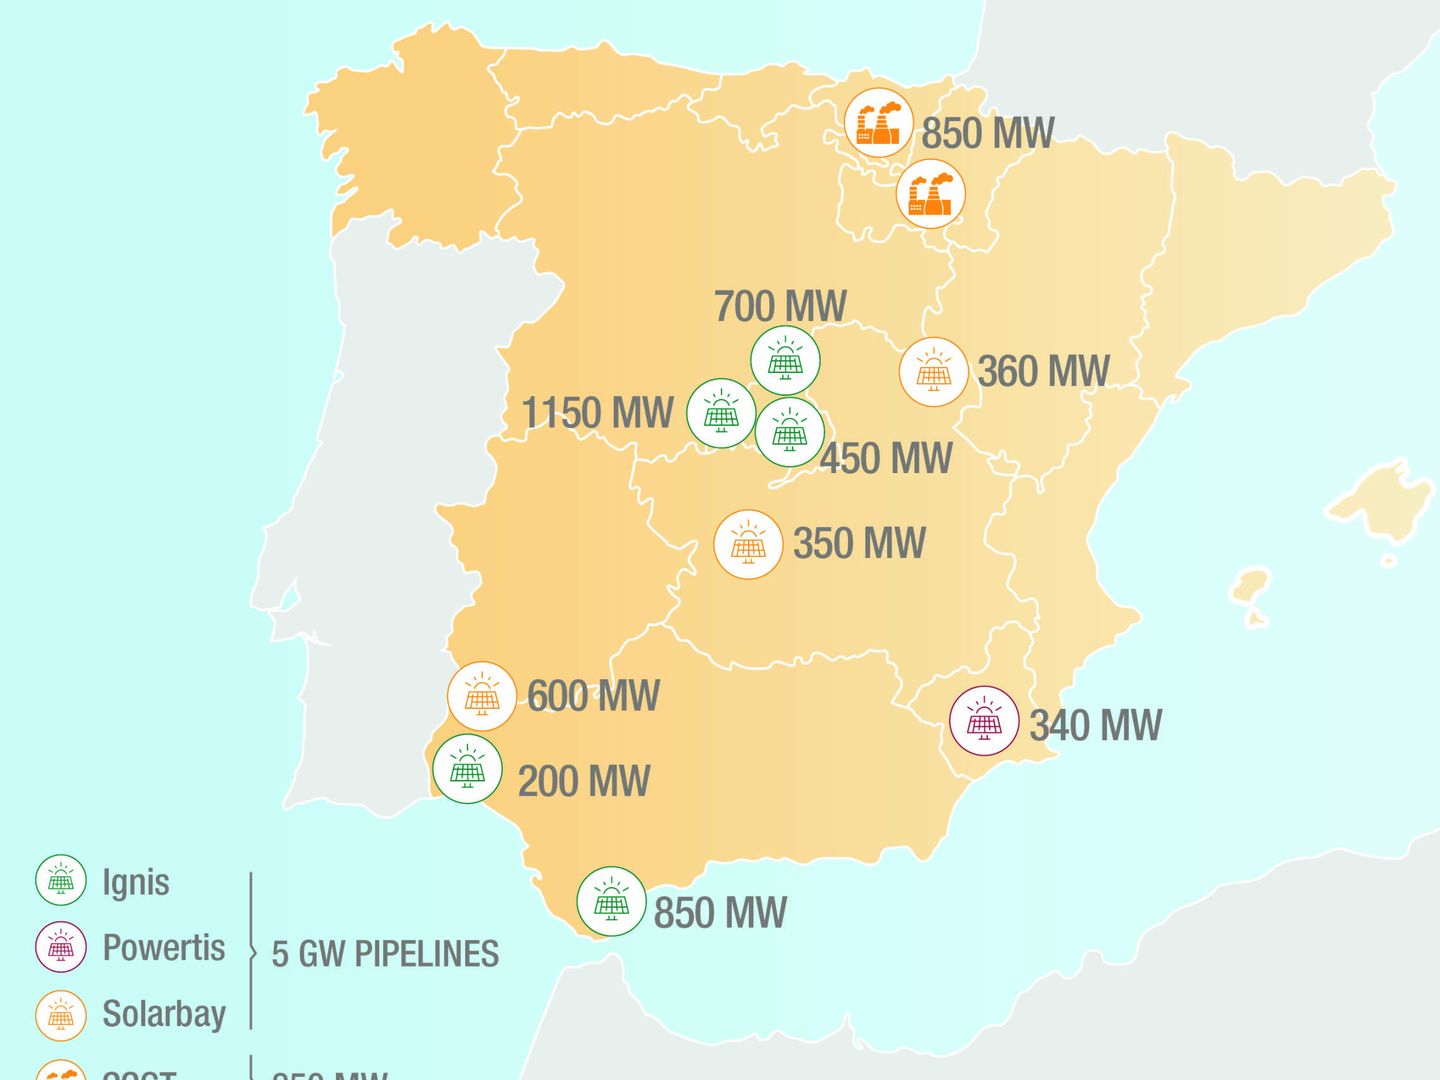 Proyectos de Total en España. (Fuente: Total)